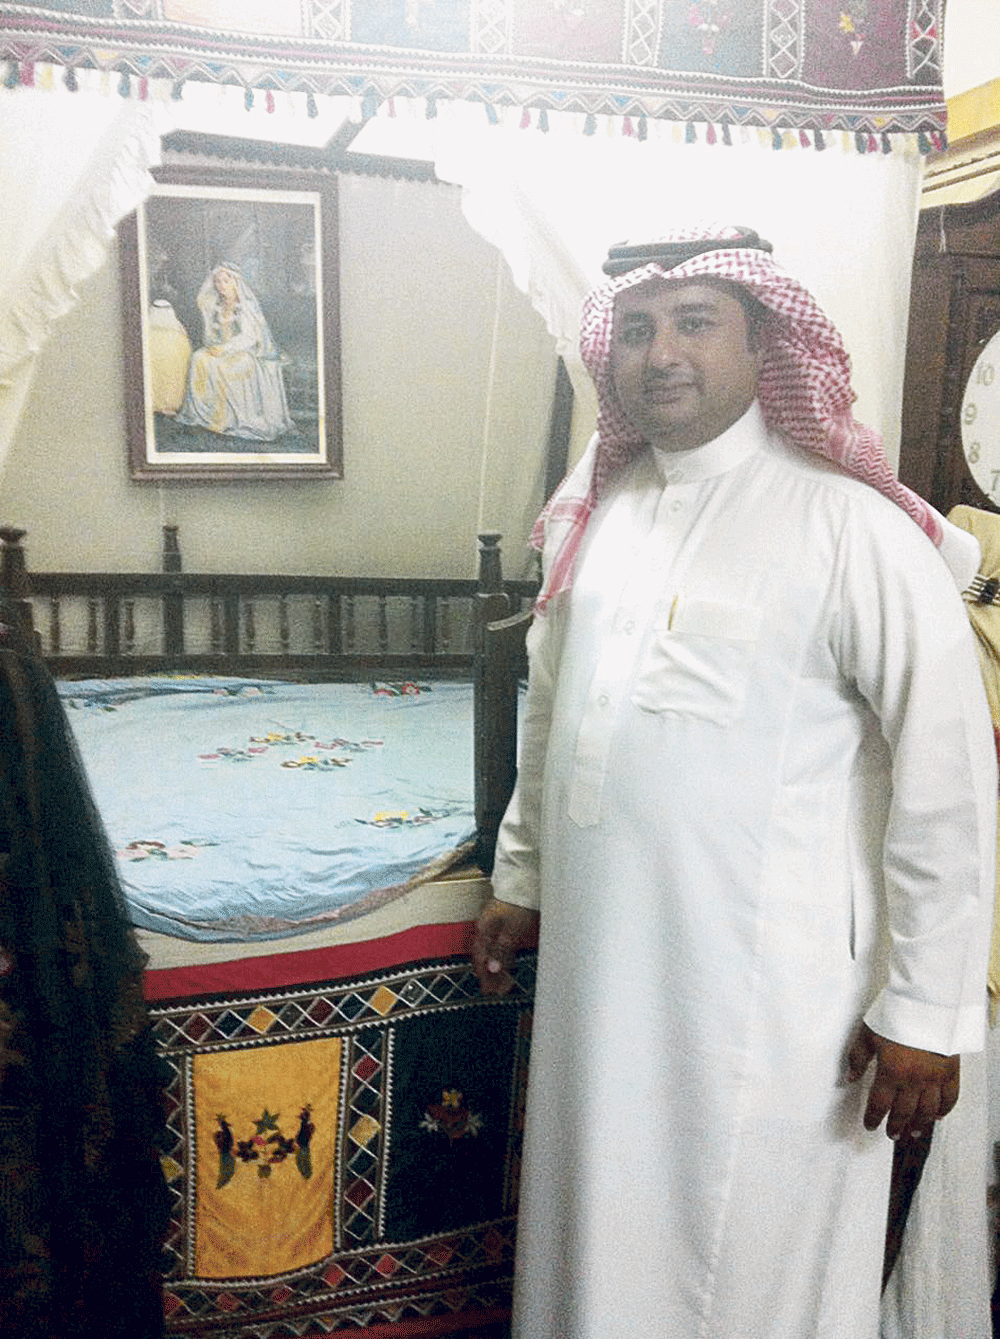 البحريني العلي في غرفة العرس بمتحف الذرمان (اليوم)